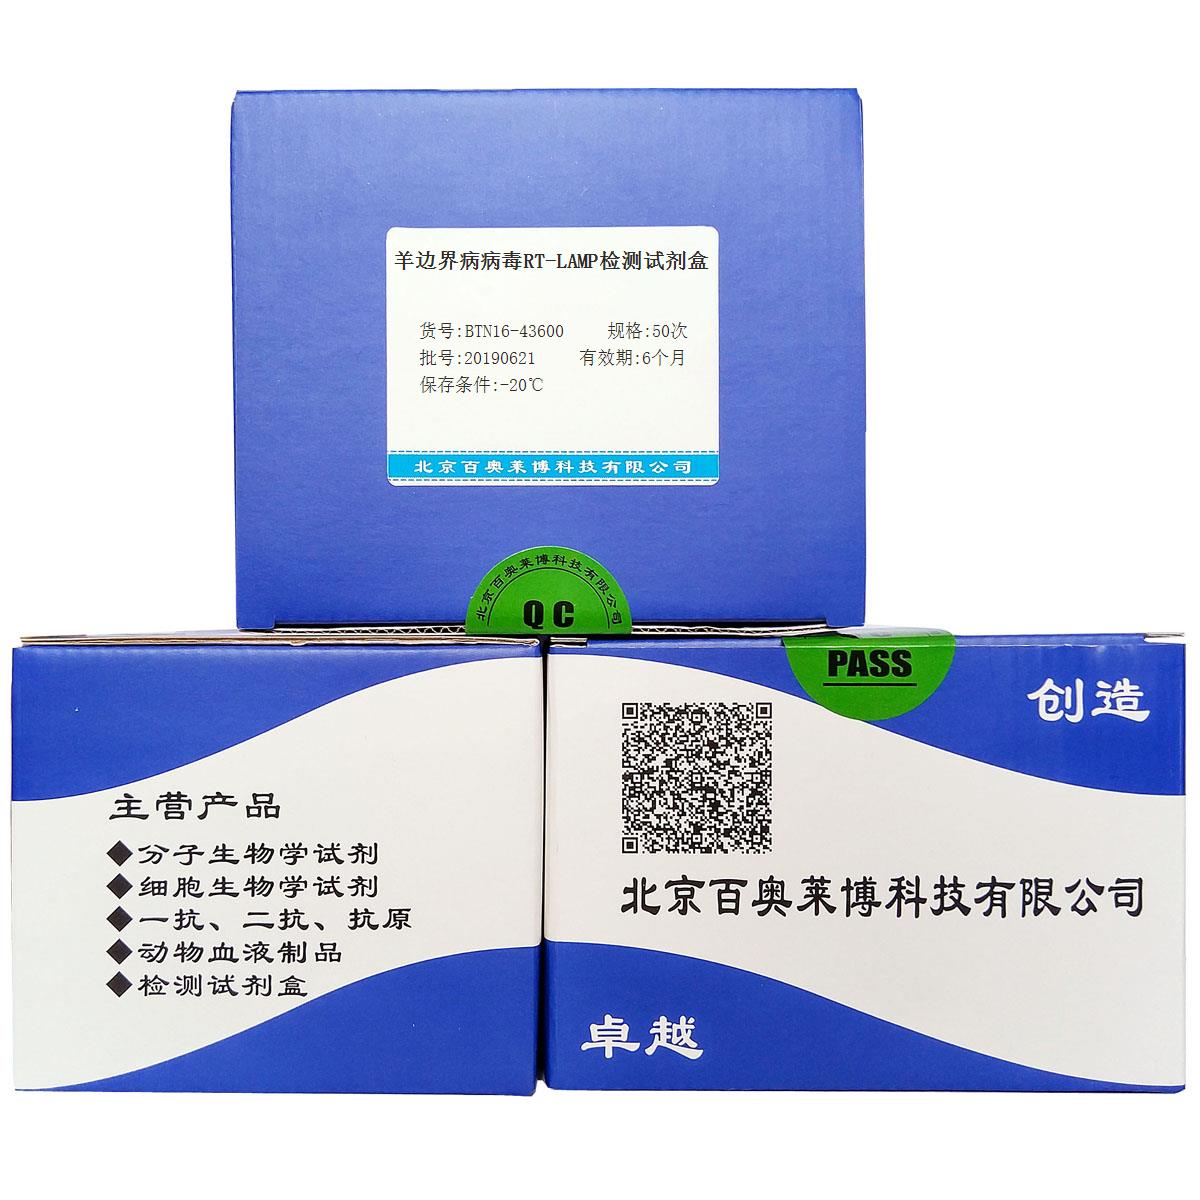 羊边界病病毒RT-LAMP检测试剂盒北京厂家